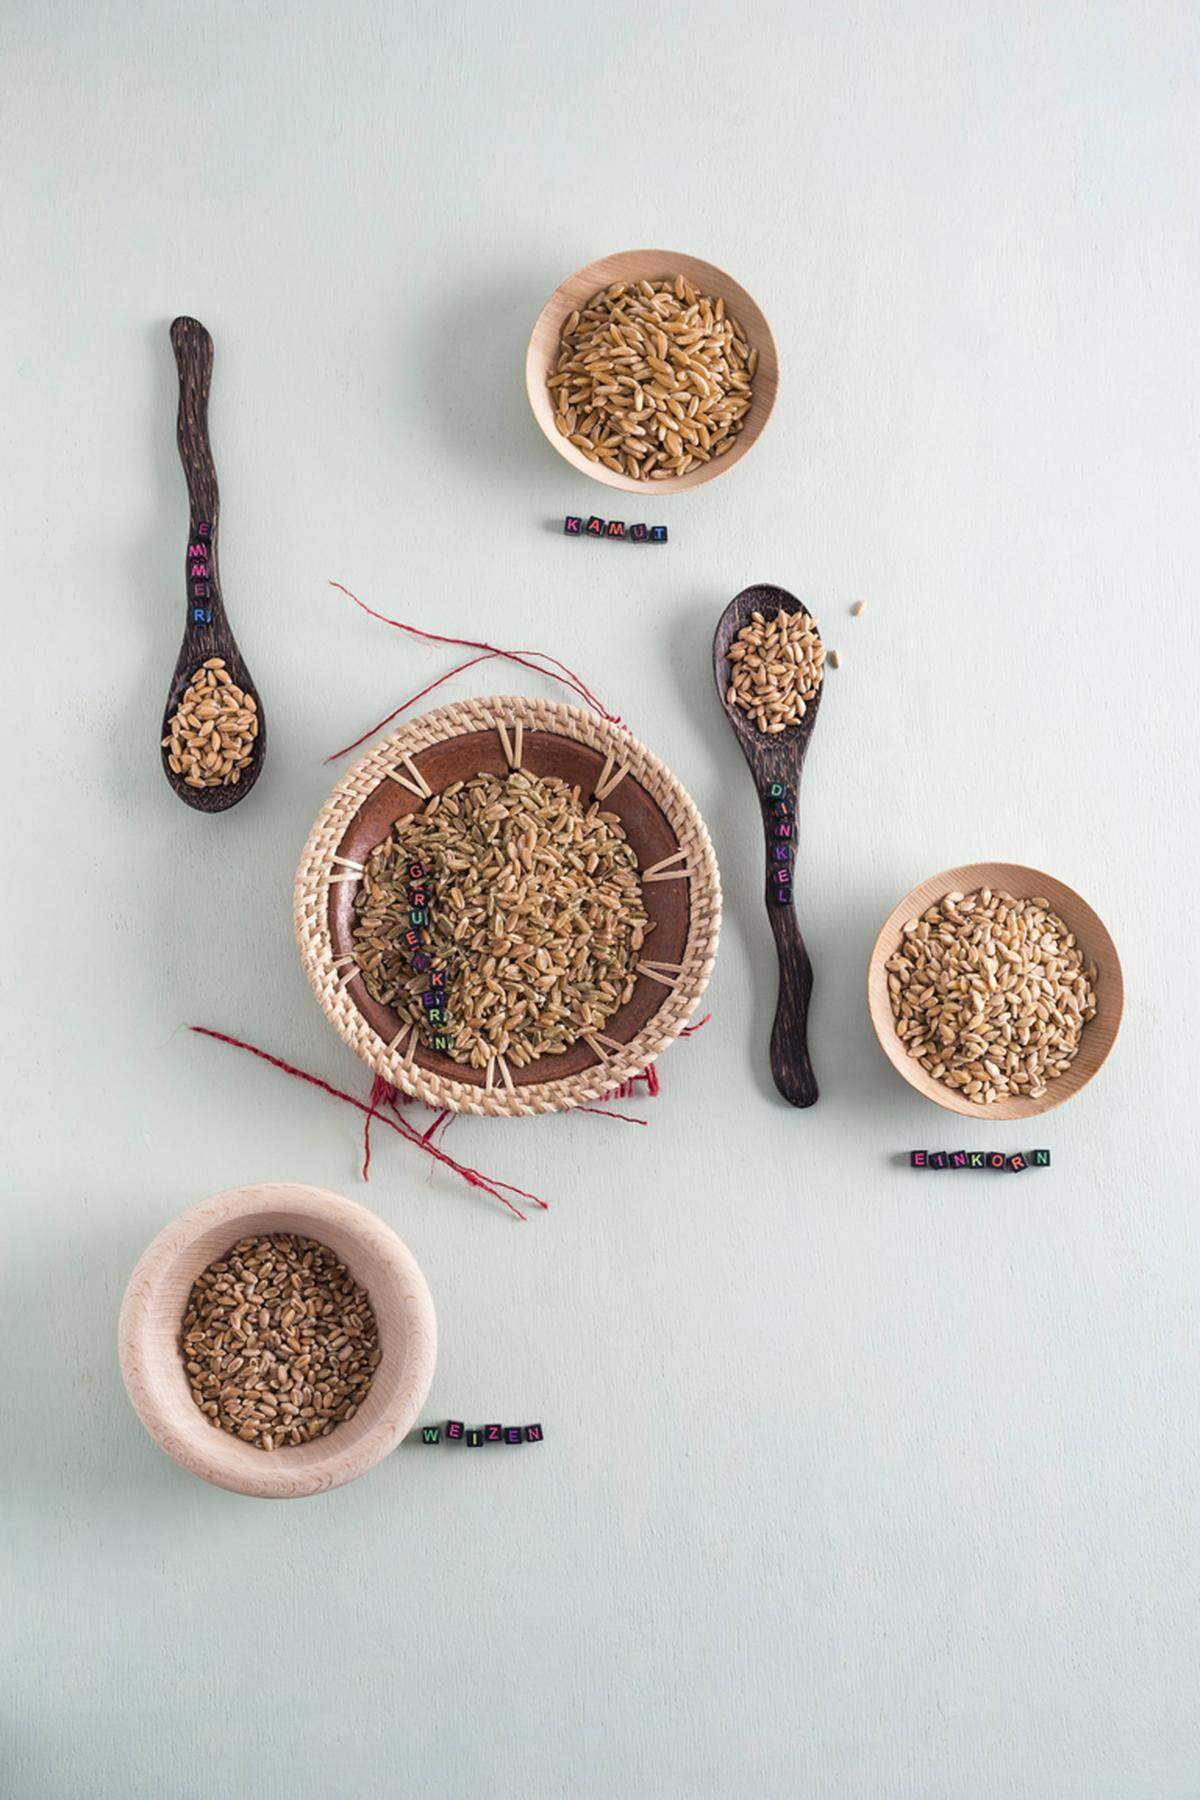 Emmer und Einkorn sowie Pseudo-Getreide wie Amaranth, Quinoa oder Buchweizen sind stark im Kommen. Die Wiederbelebung scheint beim Backen und Kochen gut zu funktionieren.